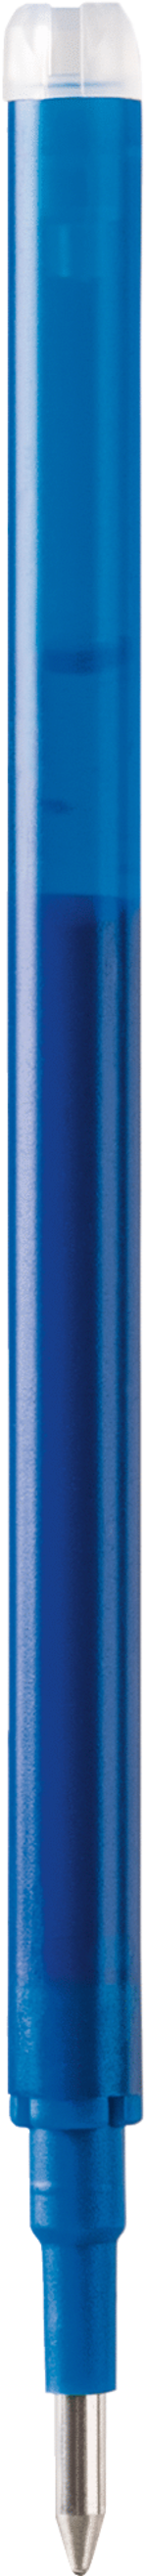 Ersatzmine radierbar „Remove“ Colour Code Länge: 11 cm azur